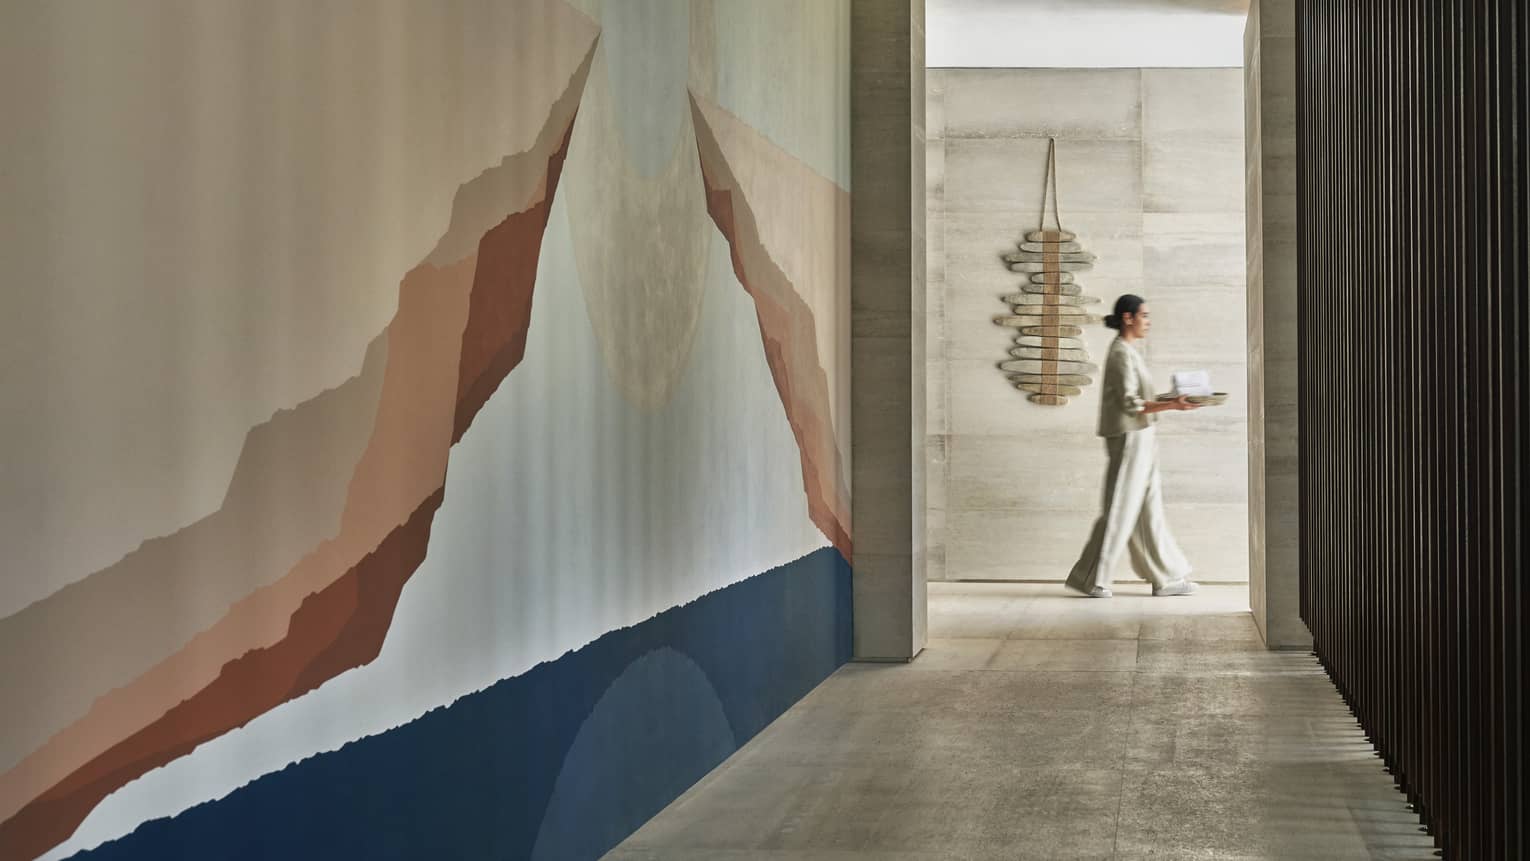 A four seasons spa staff carries a tray through a white marble corridor 